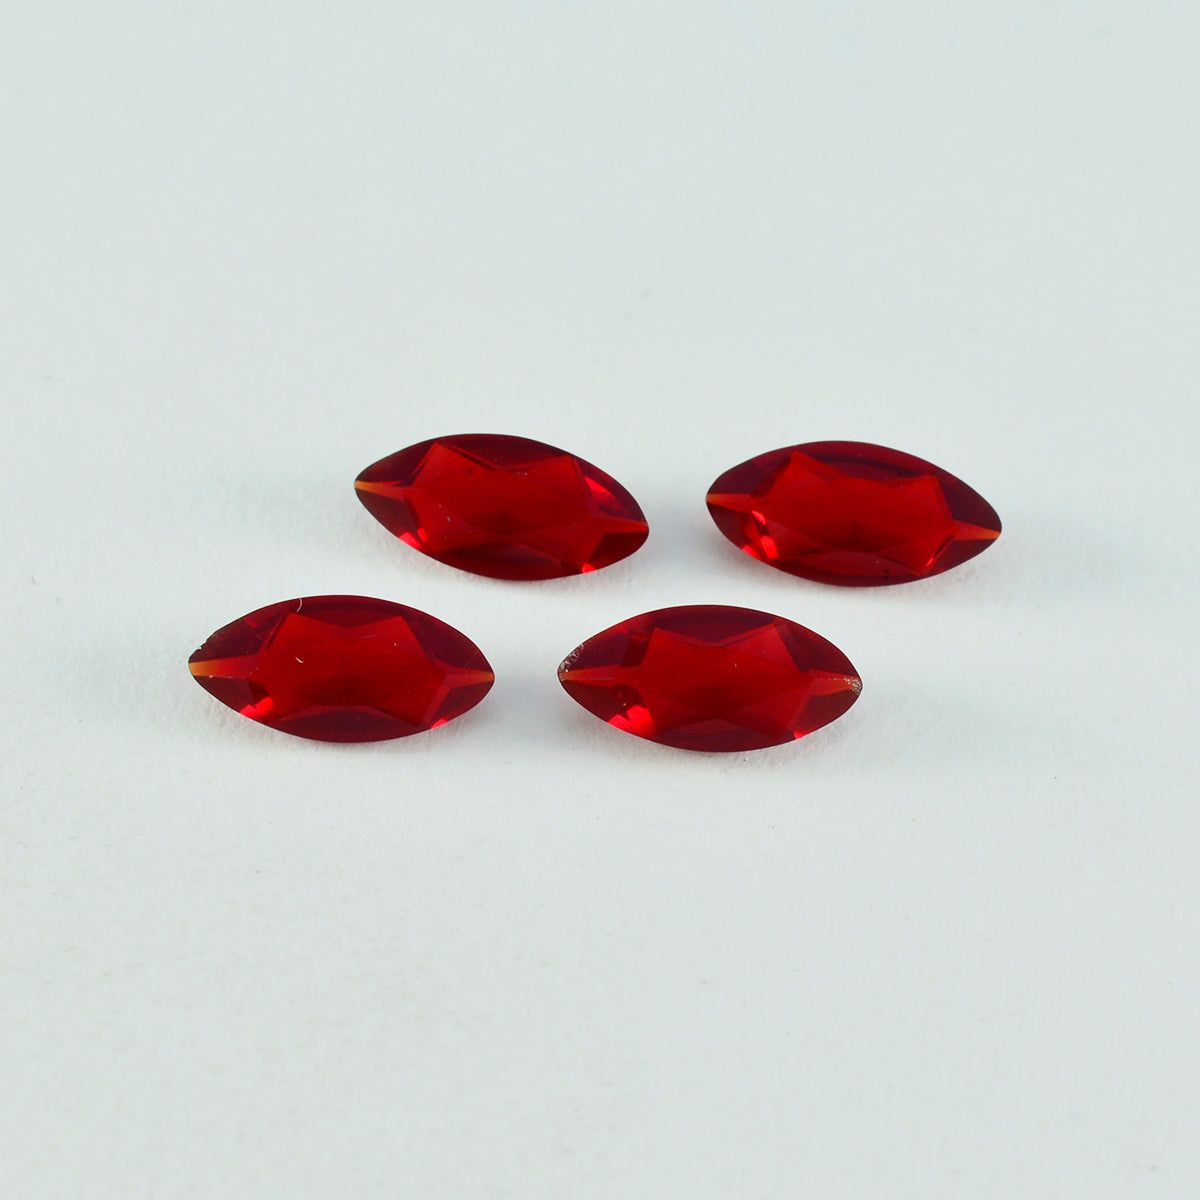 Riyogems 1 pièce rubis rouge cz à facettes 4x8mm forme marquise bonne qualité pierre précieuse en vrac